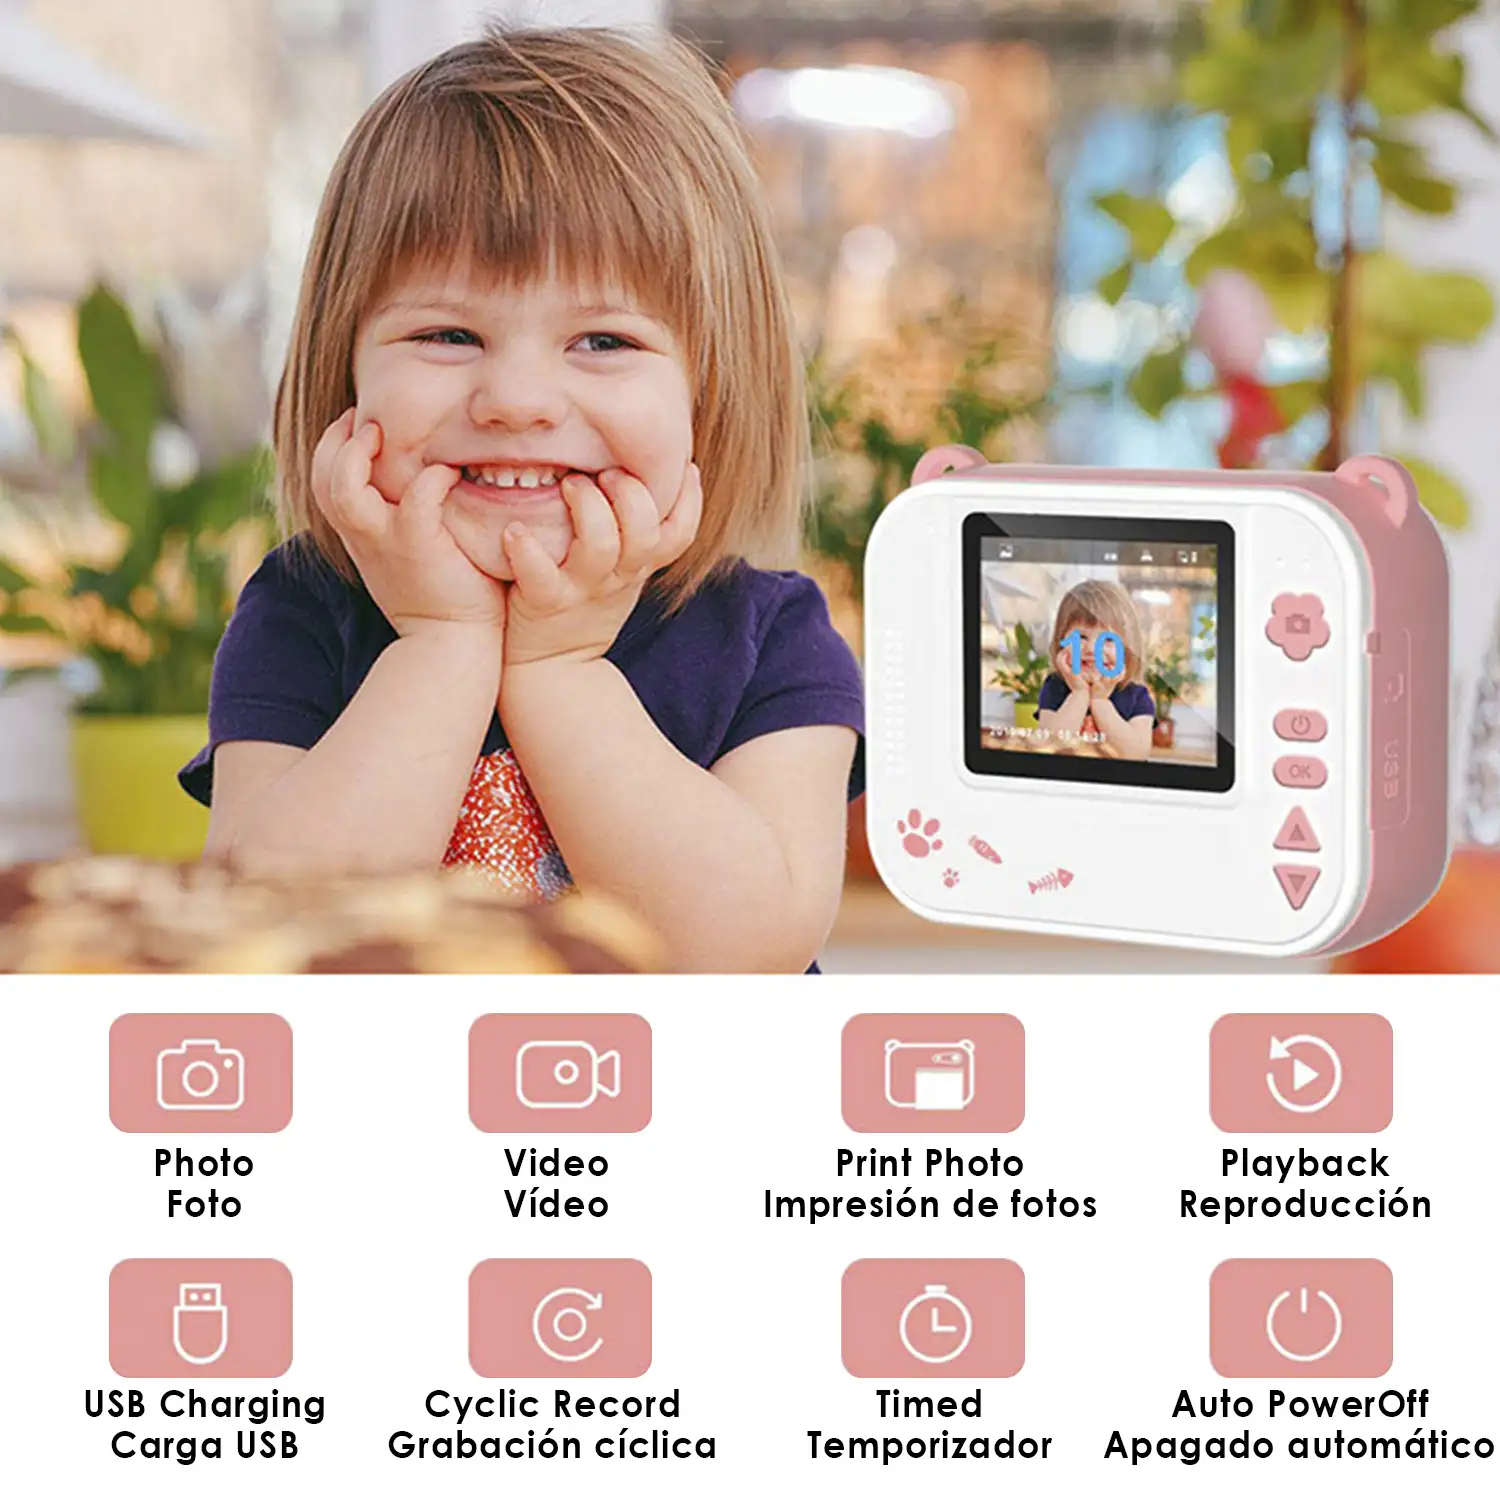 Cámara digital de fotos y video para niños. FullHD y 12mpx. Impresión instantánea de tus fotos preferidas.